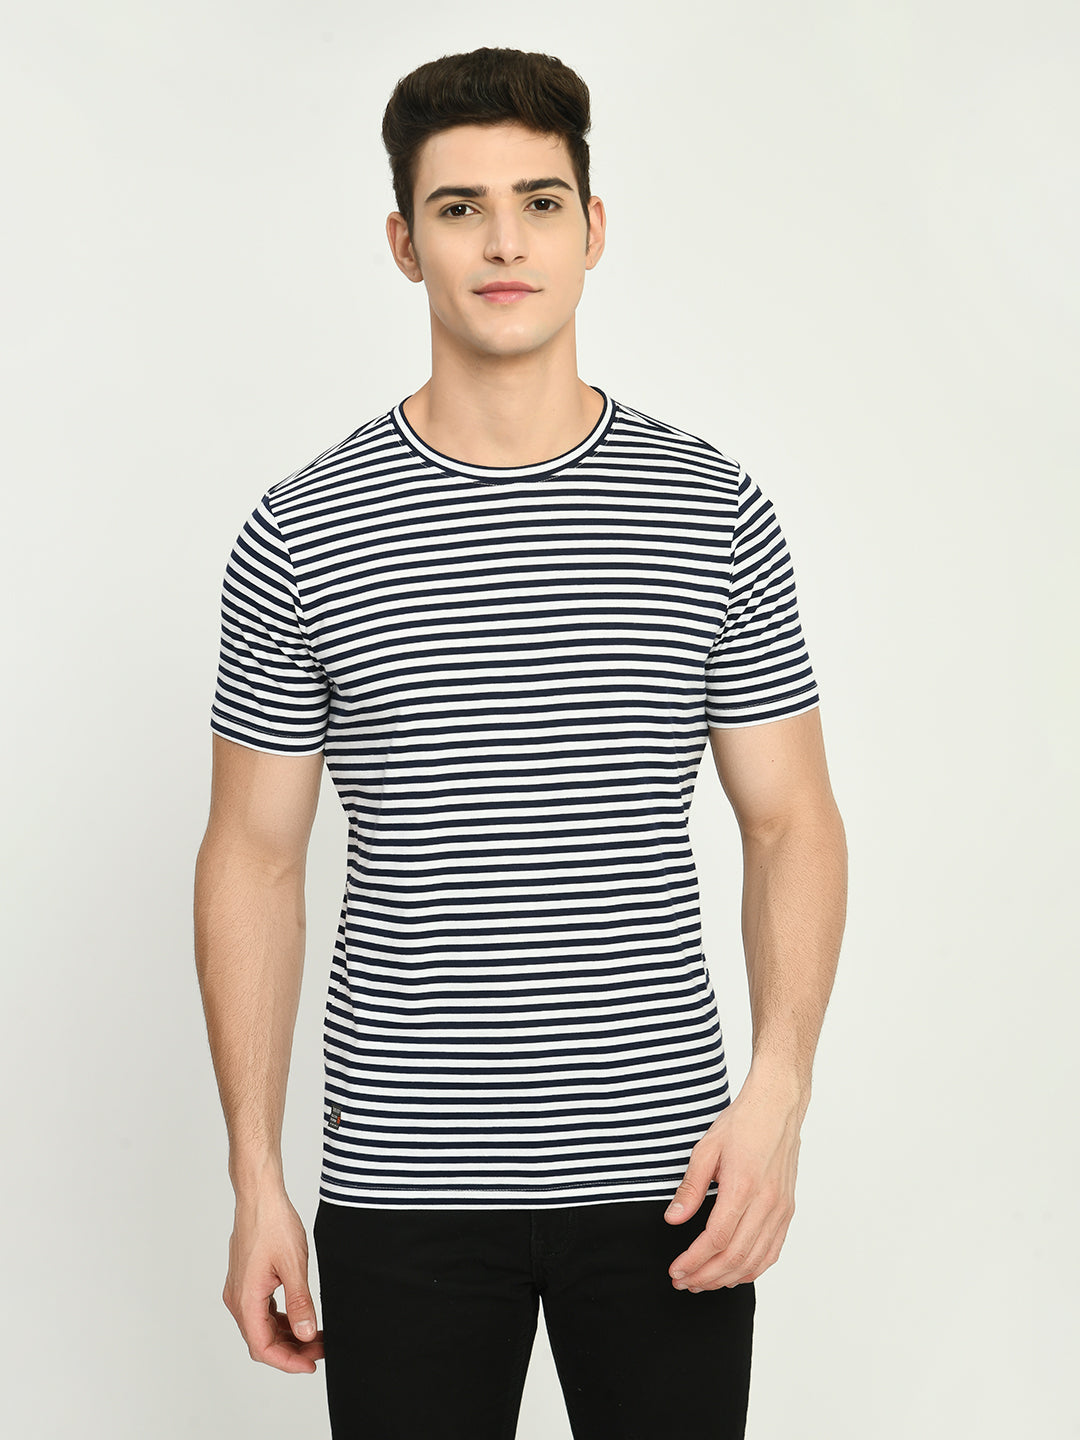 Men's Navy White Striped Round Neck T-Shirt - SQUIREHOOD